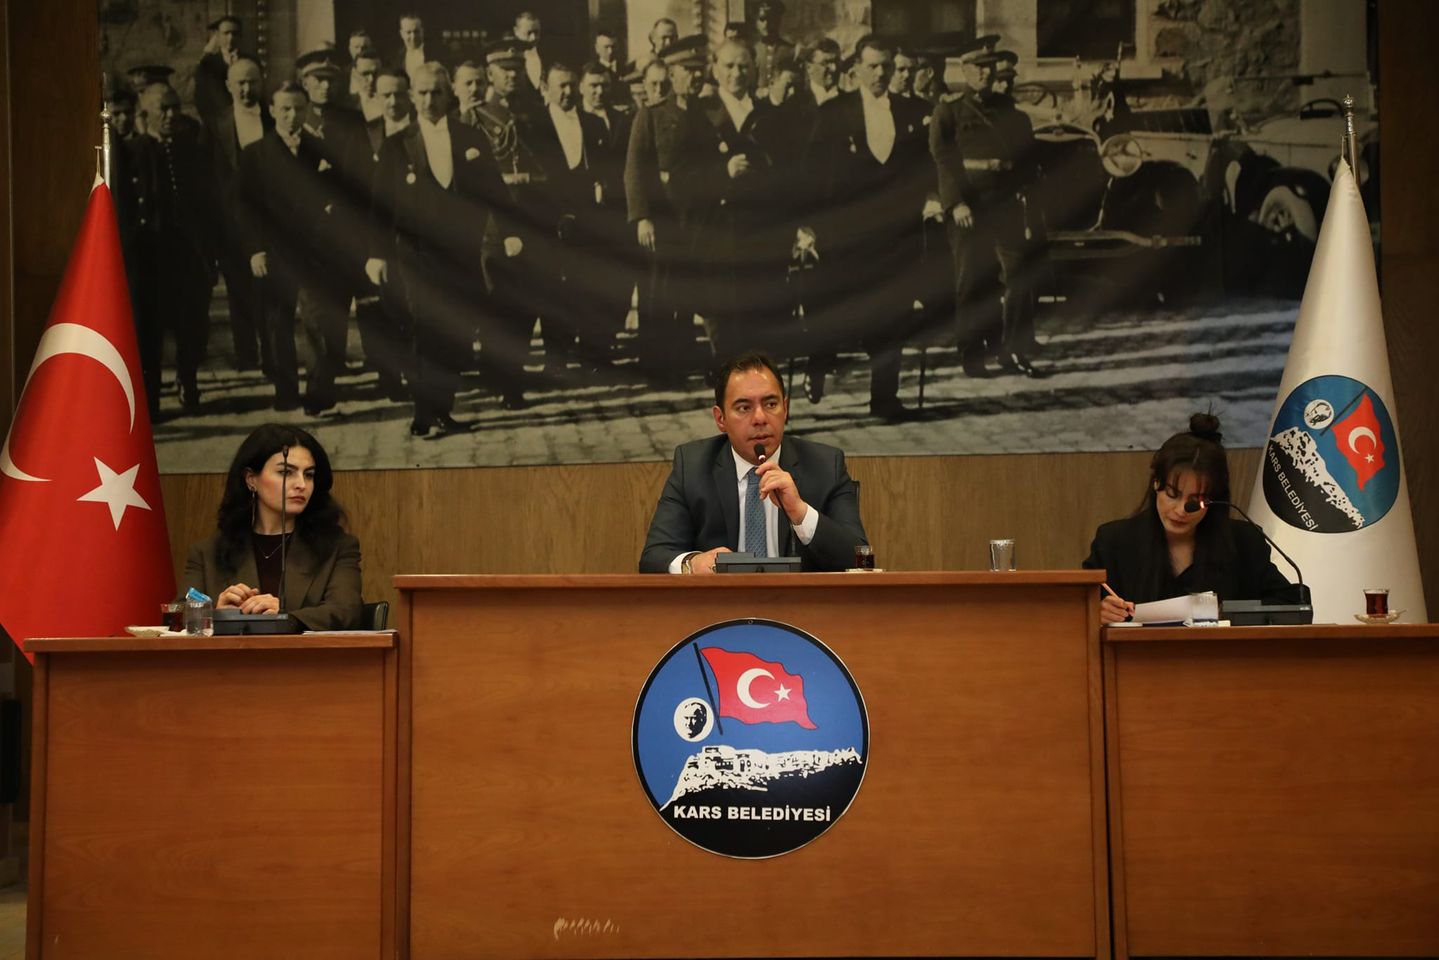 Kars Belediye Başkanı Prof. Dr. Ötüken Senger Başkanlığında Meclis Toplantısı Gerçekleştirildi